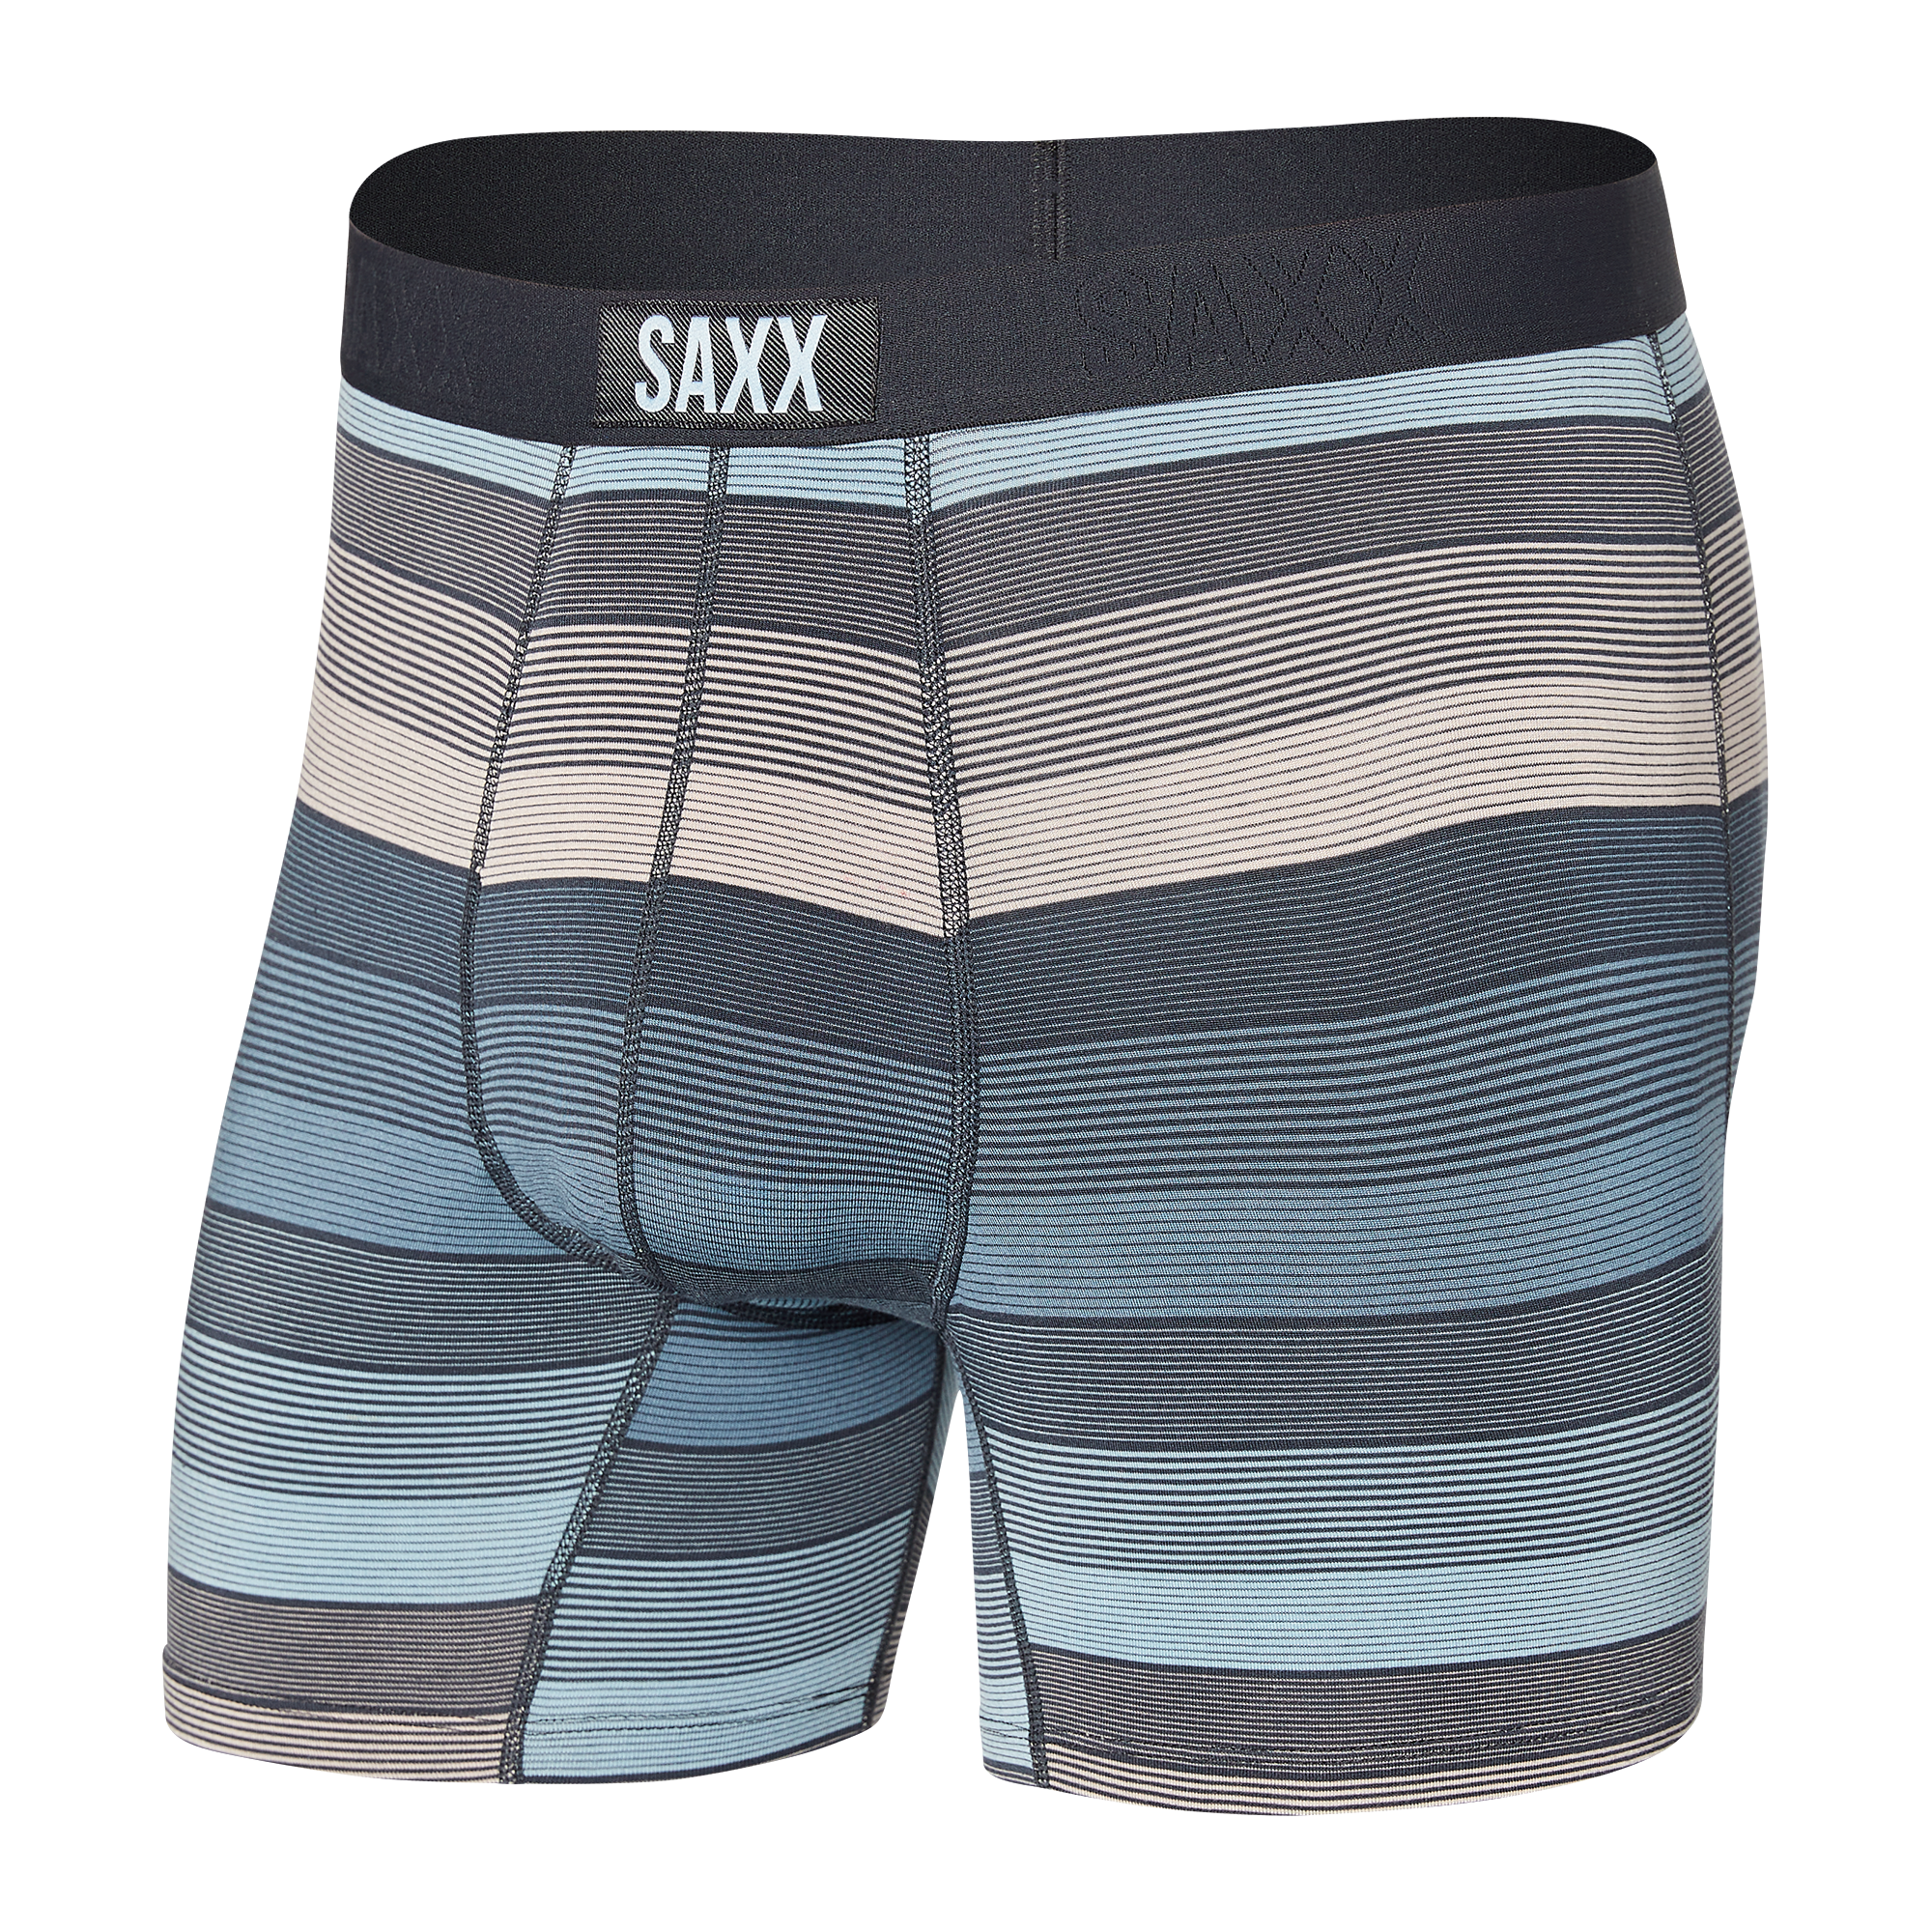 SAXX boxer vibe Hazy Stripe